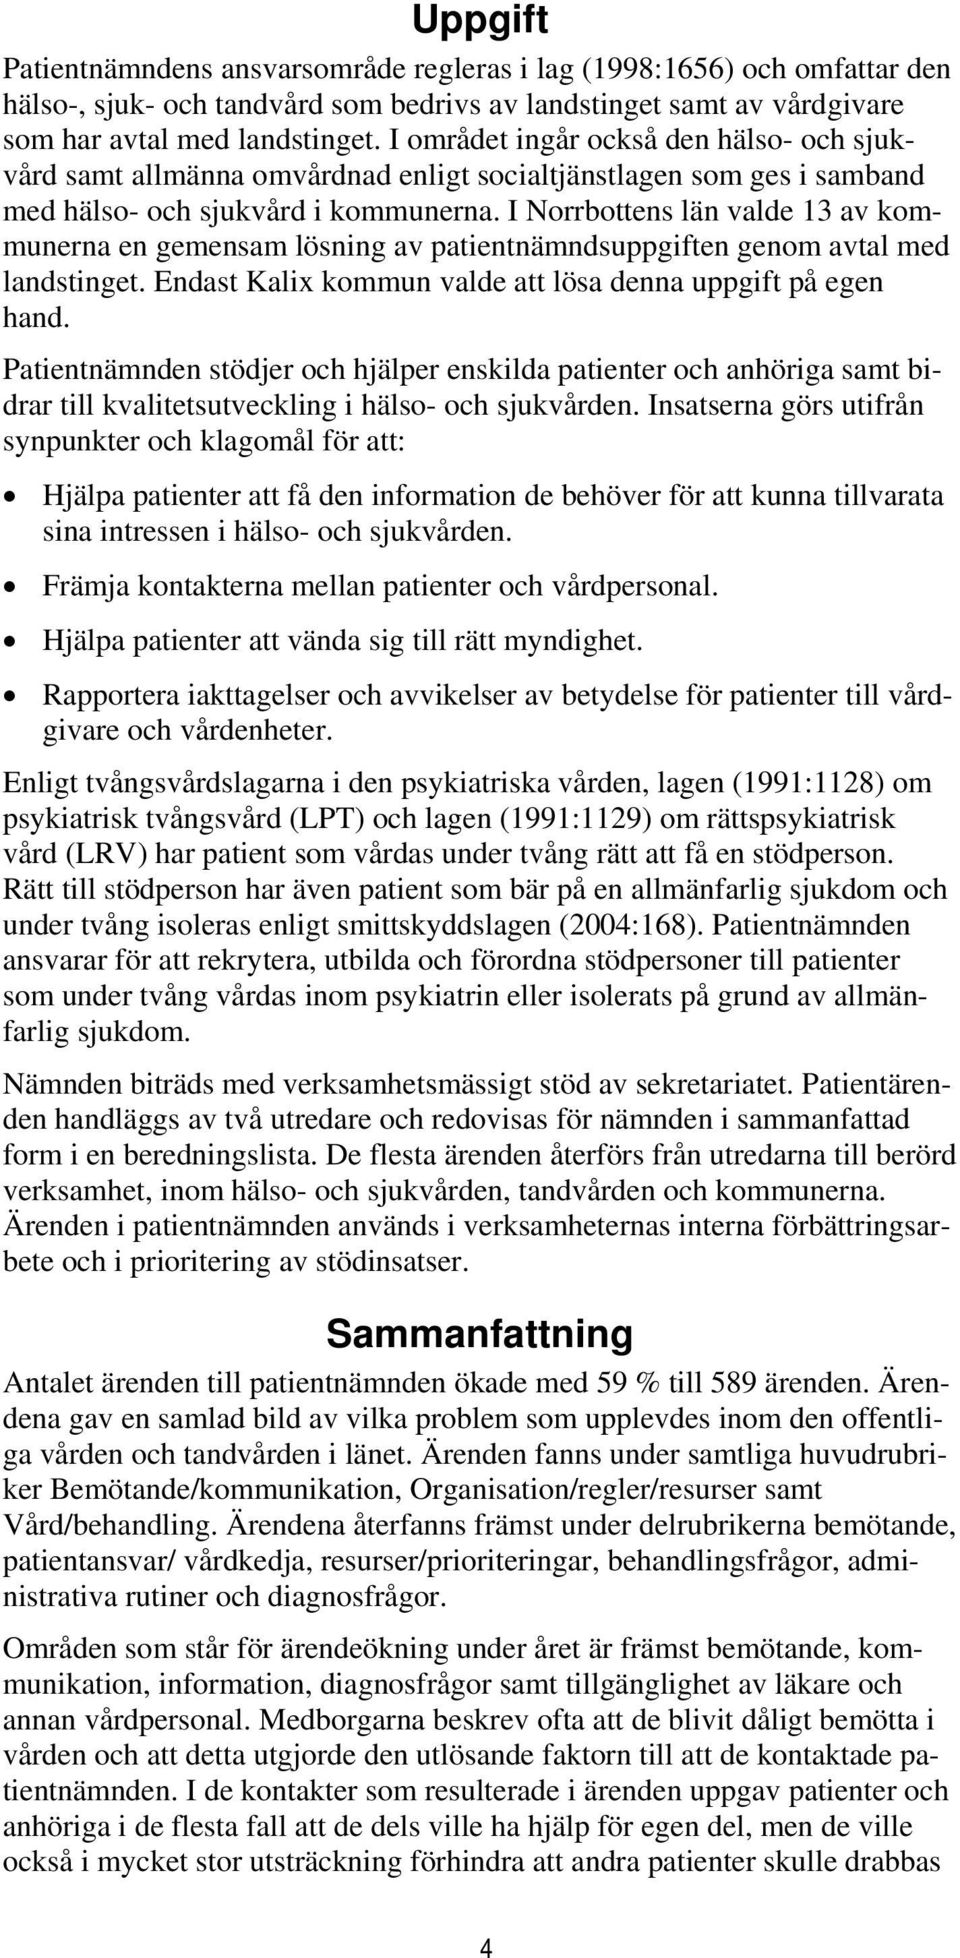 I Norrbottens län valde 13 av kommunerna en gemensam lösning av patientnämndsuppgiften genom avtal med landstinget. Endast Kalix kommun valde att lösa denna uppgift på egen hand.